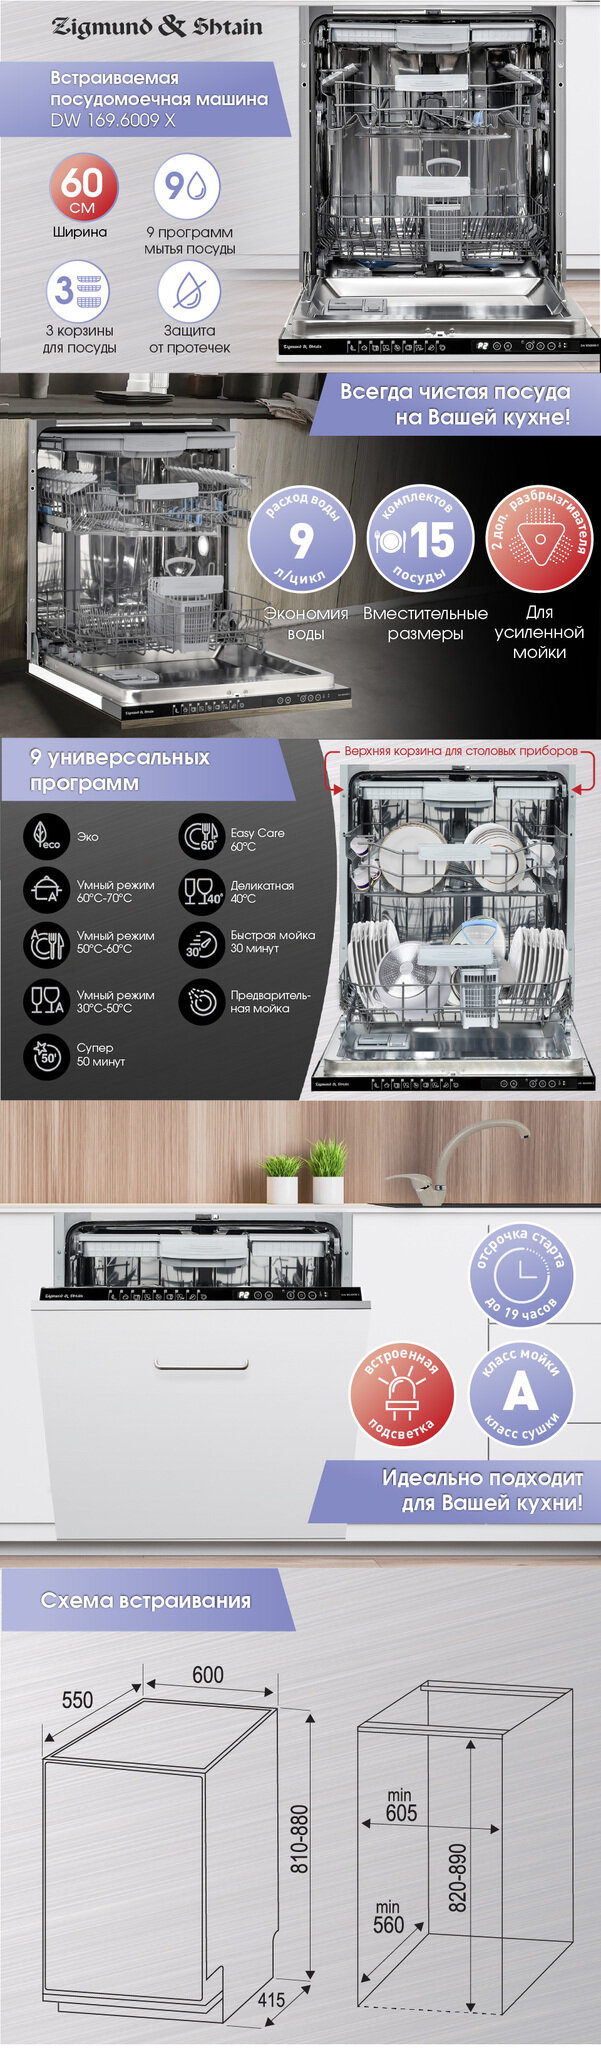 Встраиваемая посудомоечная машина Zigmund & Shtain DW 1696009 X